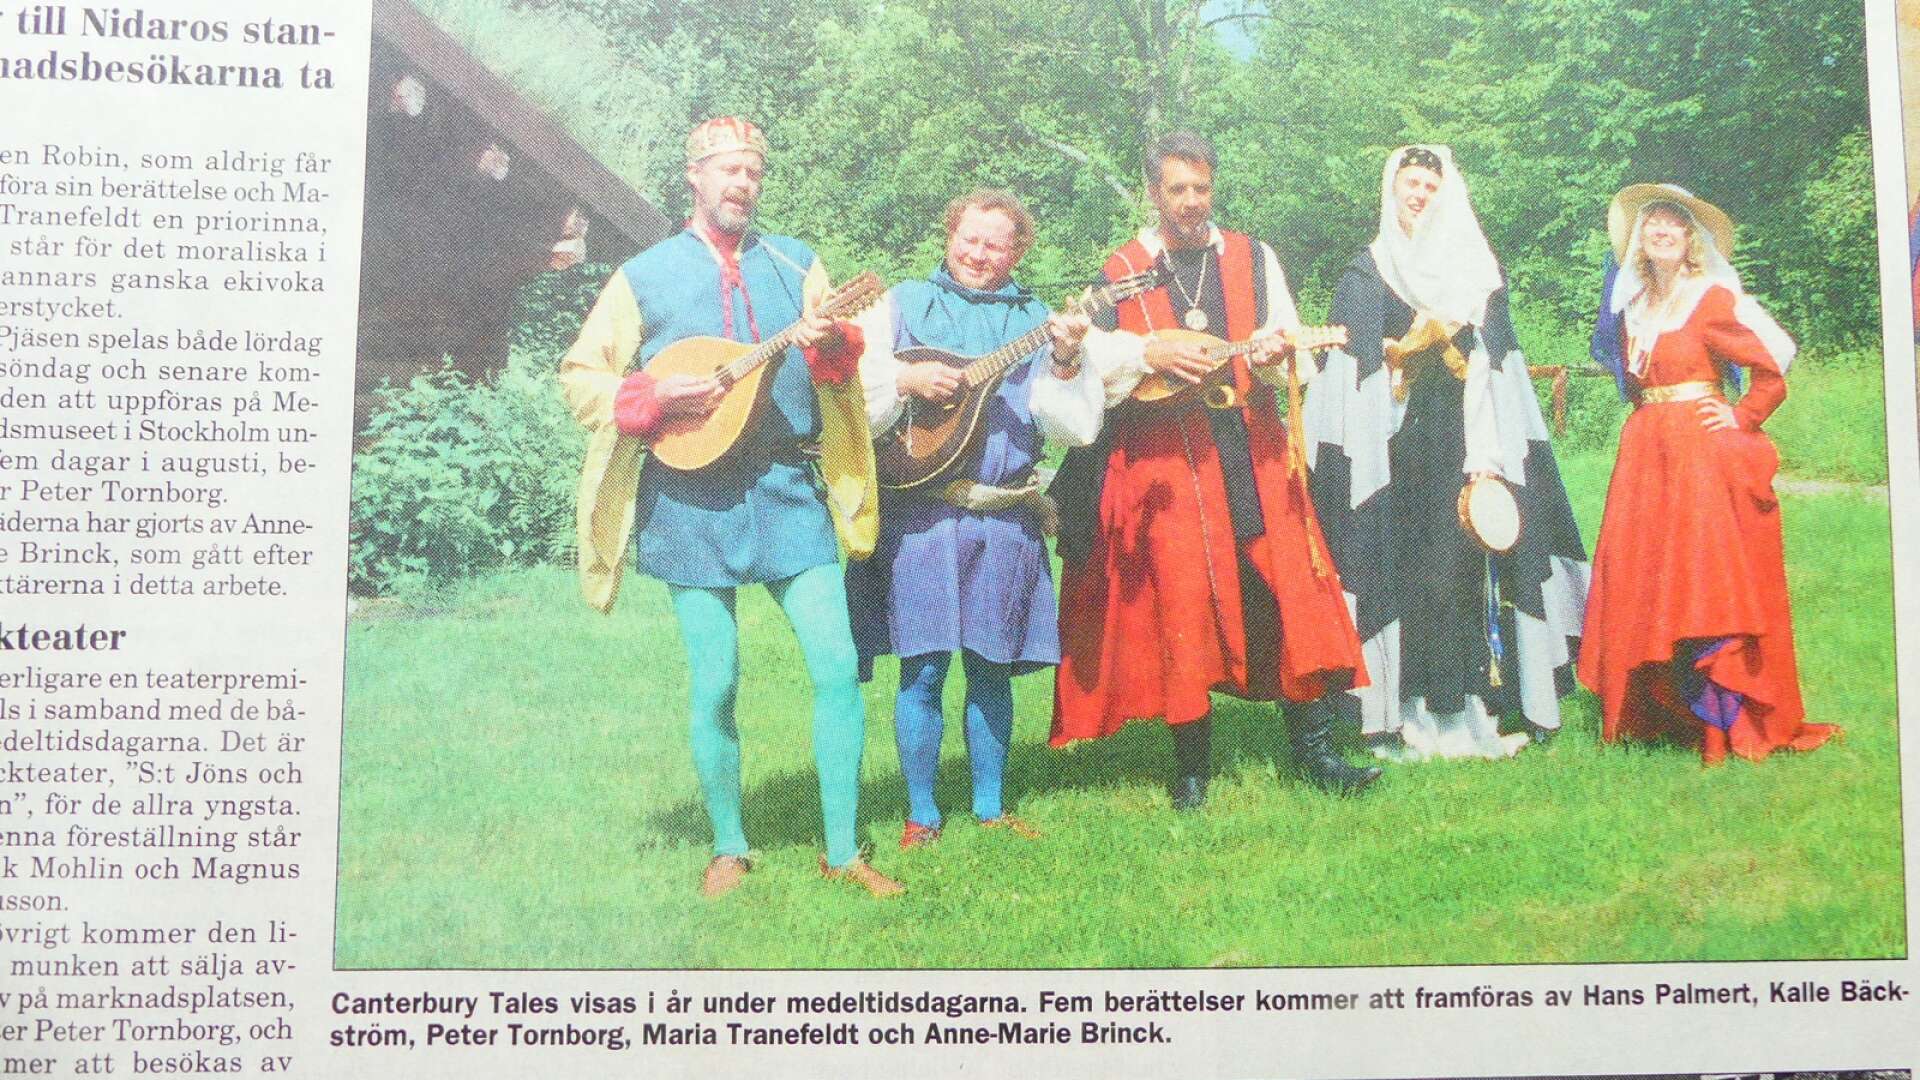 Fem pilgrimer på väg mot Nidaros 1998.